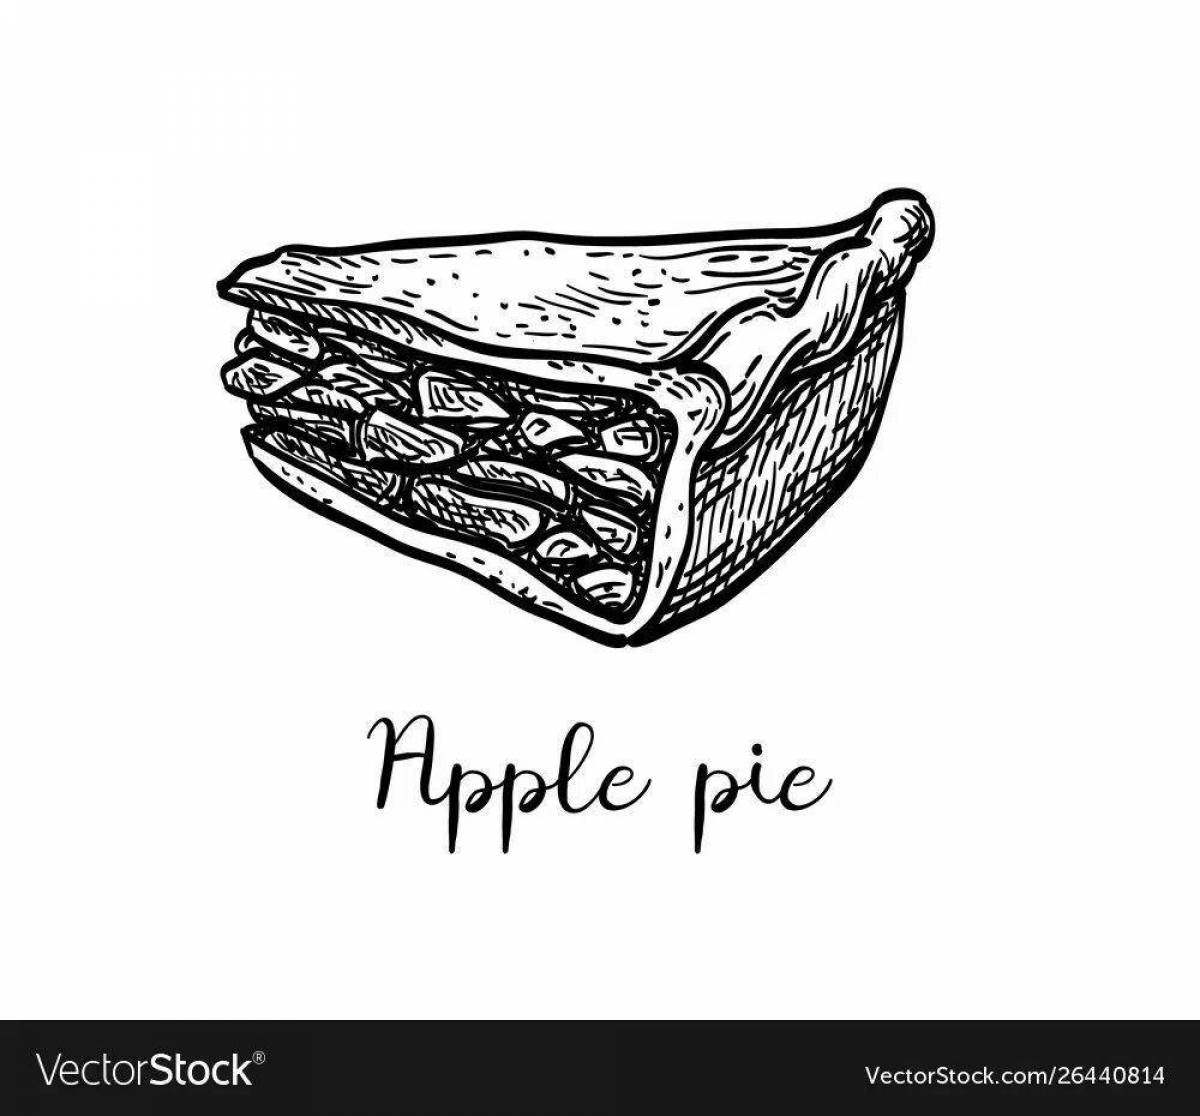 Apple pie #1